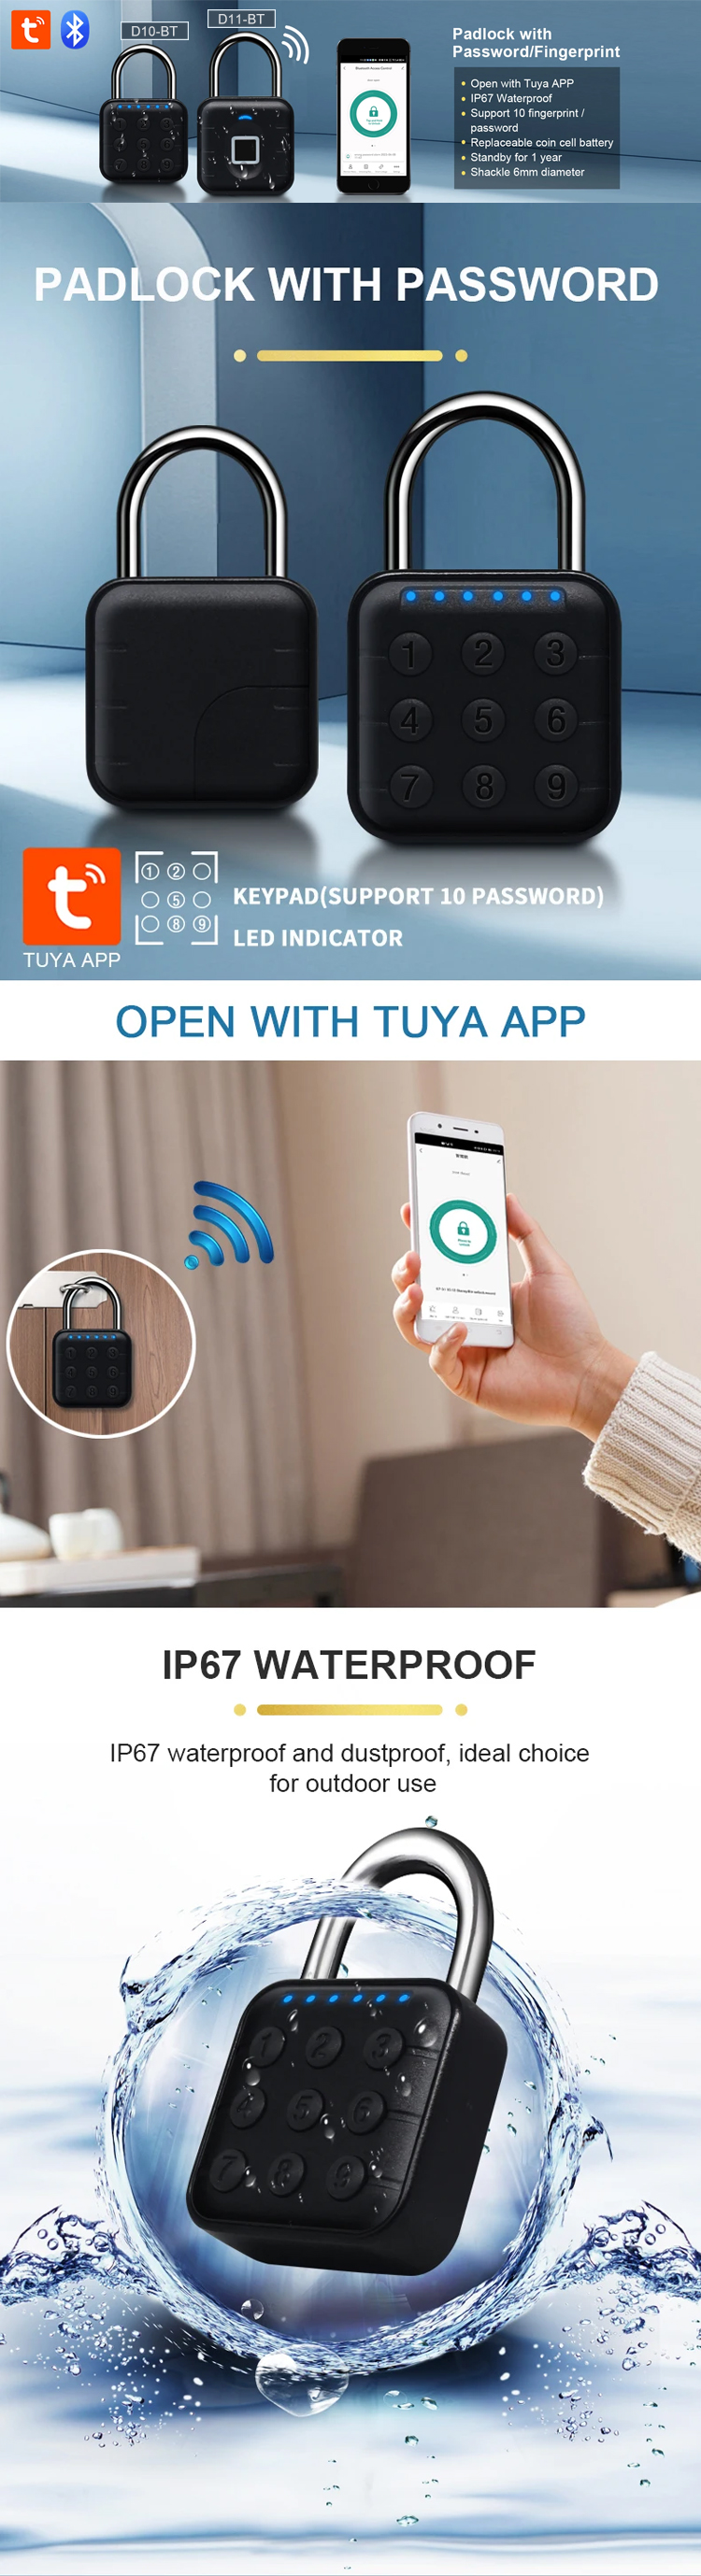 Tuya-Fingerabdrucksperre